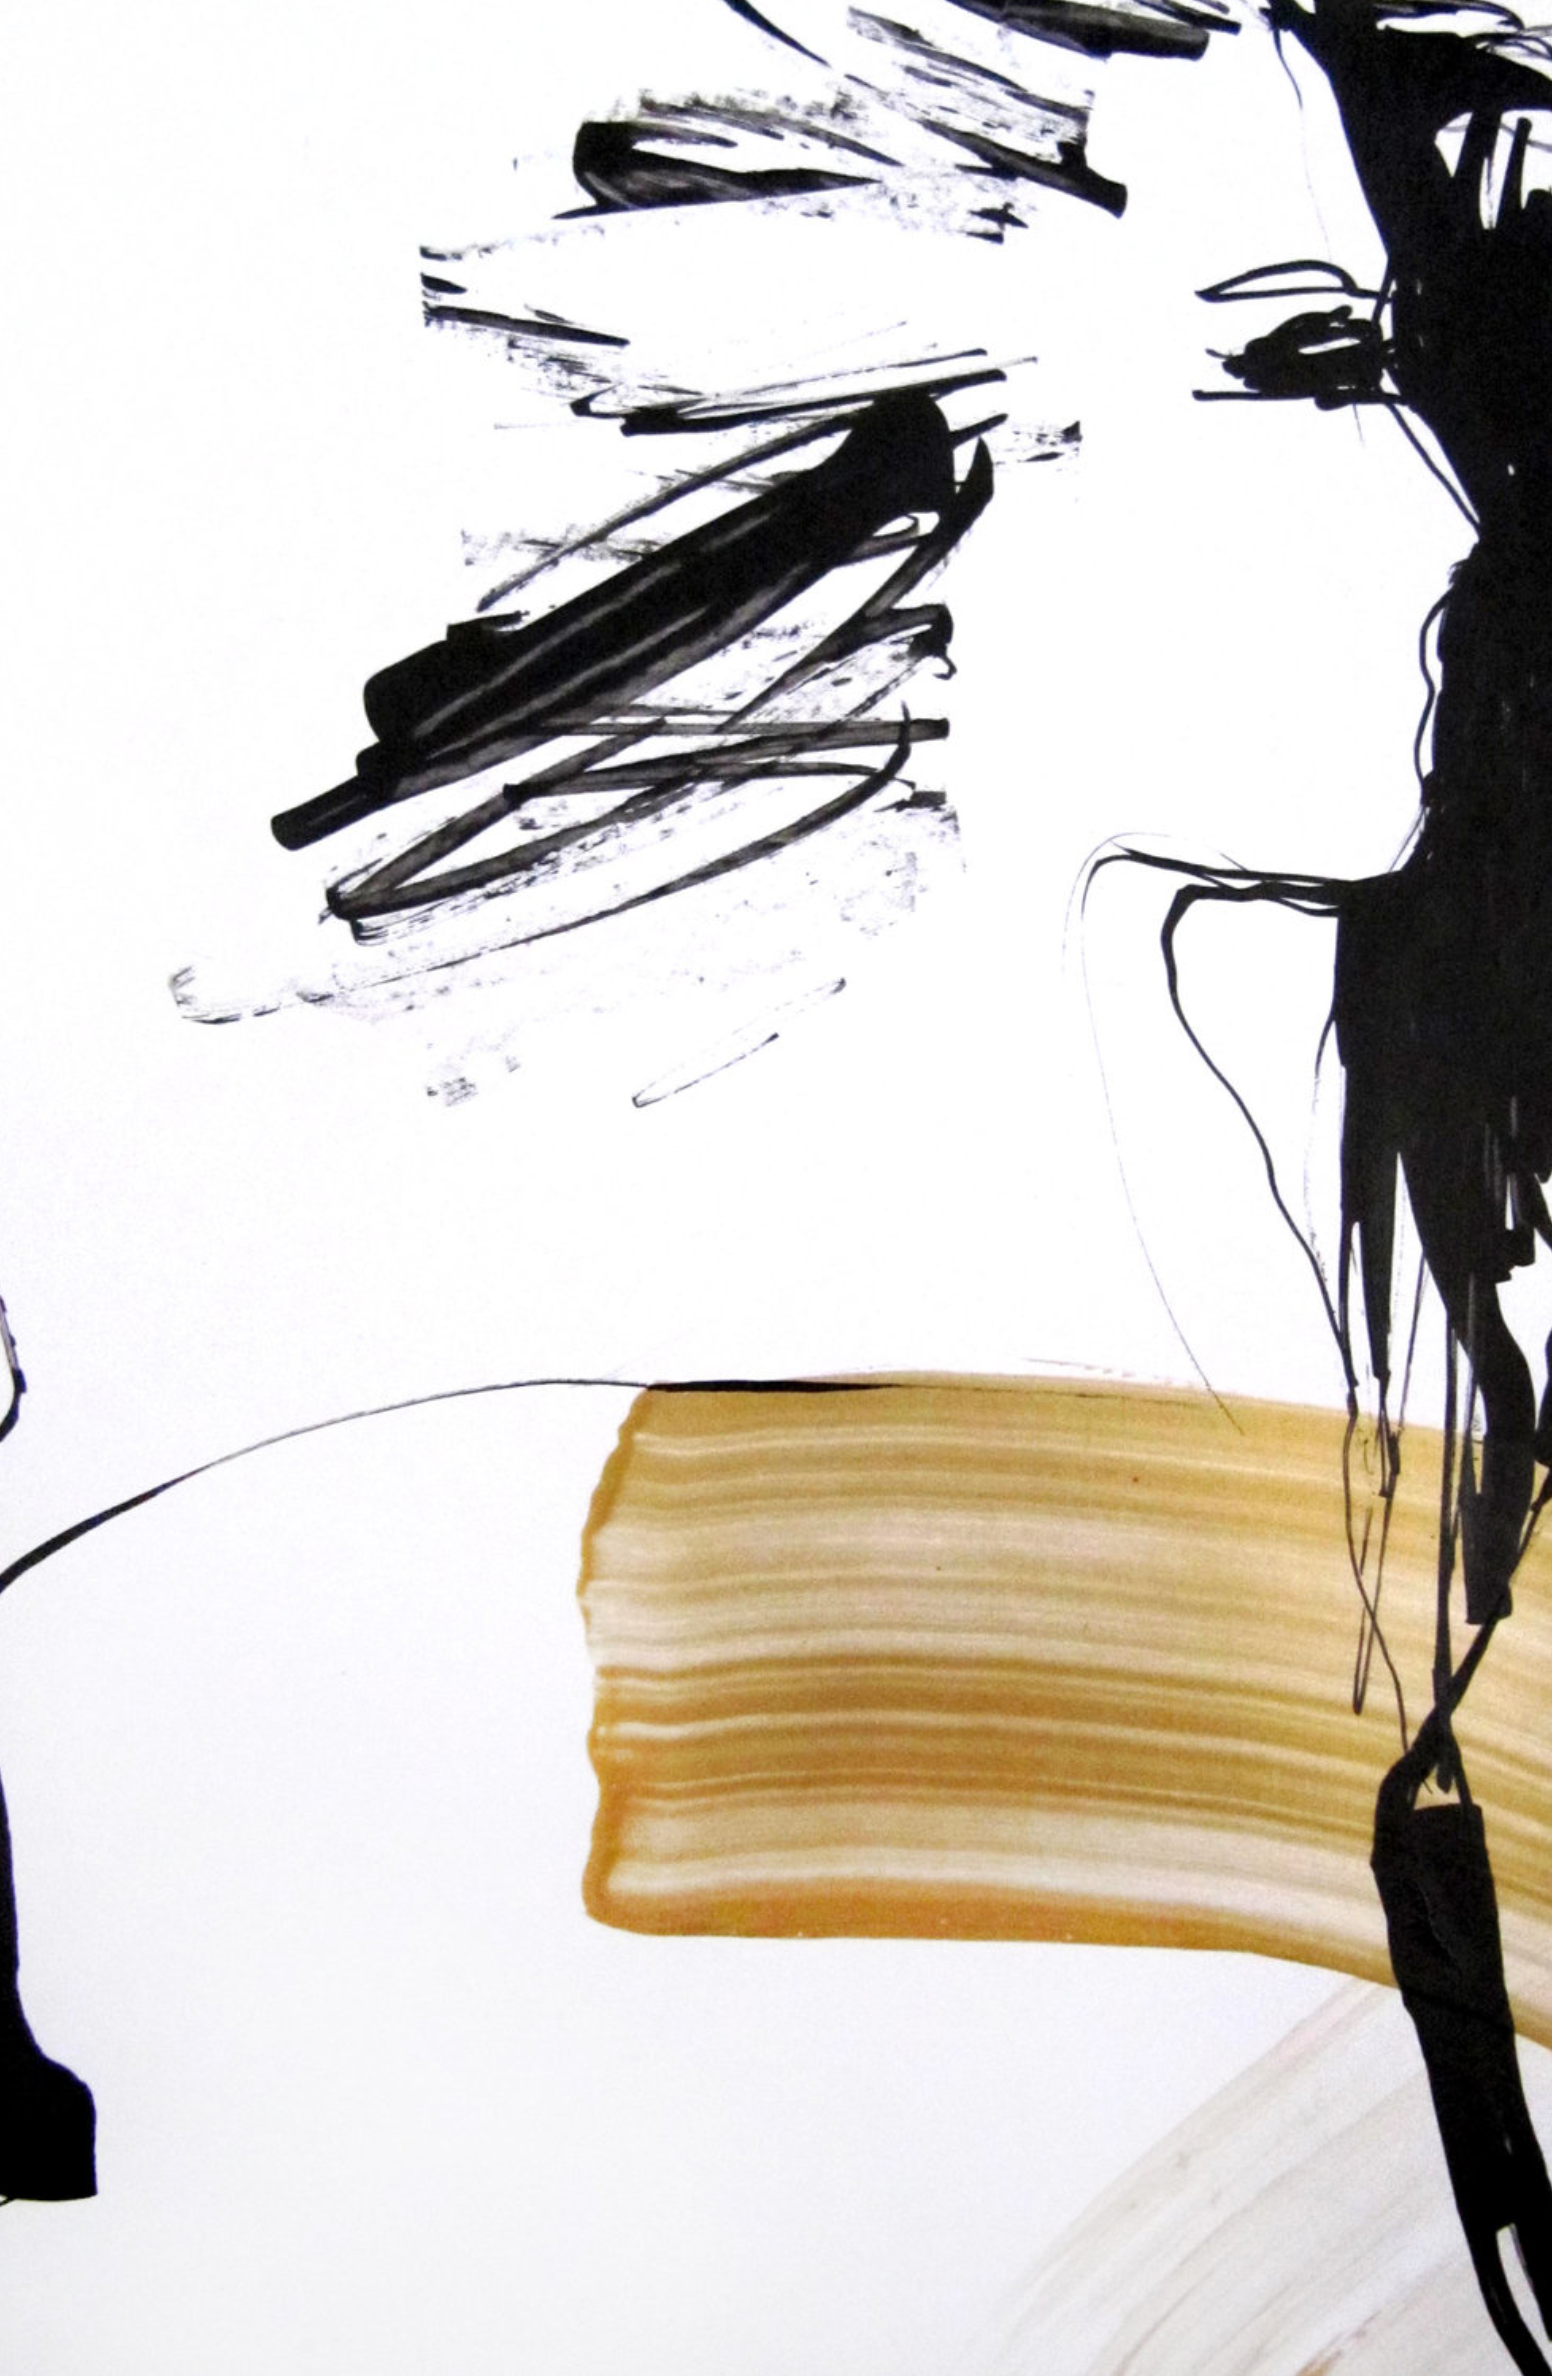 Le "Visionnaire" de Sylvia Baldeva présente une aquarelle peinte semi-abstraite. Profil de femme, scène de vie, portrait. Encre noire et peinture dorée sur papier